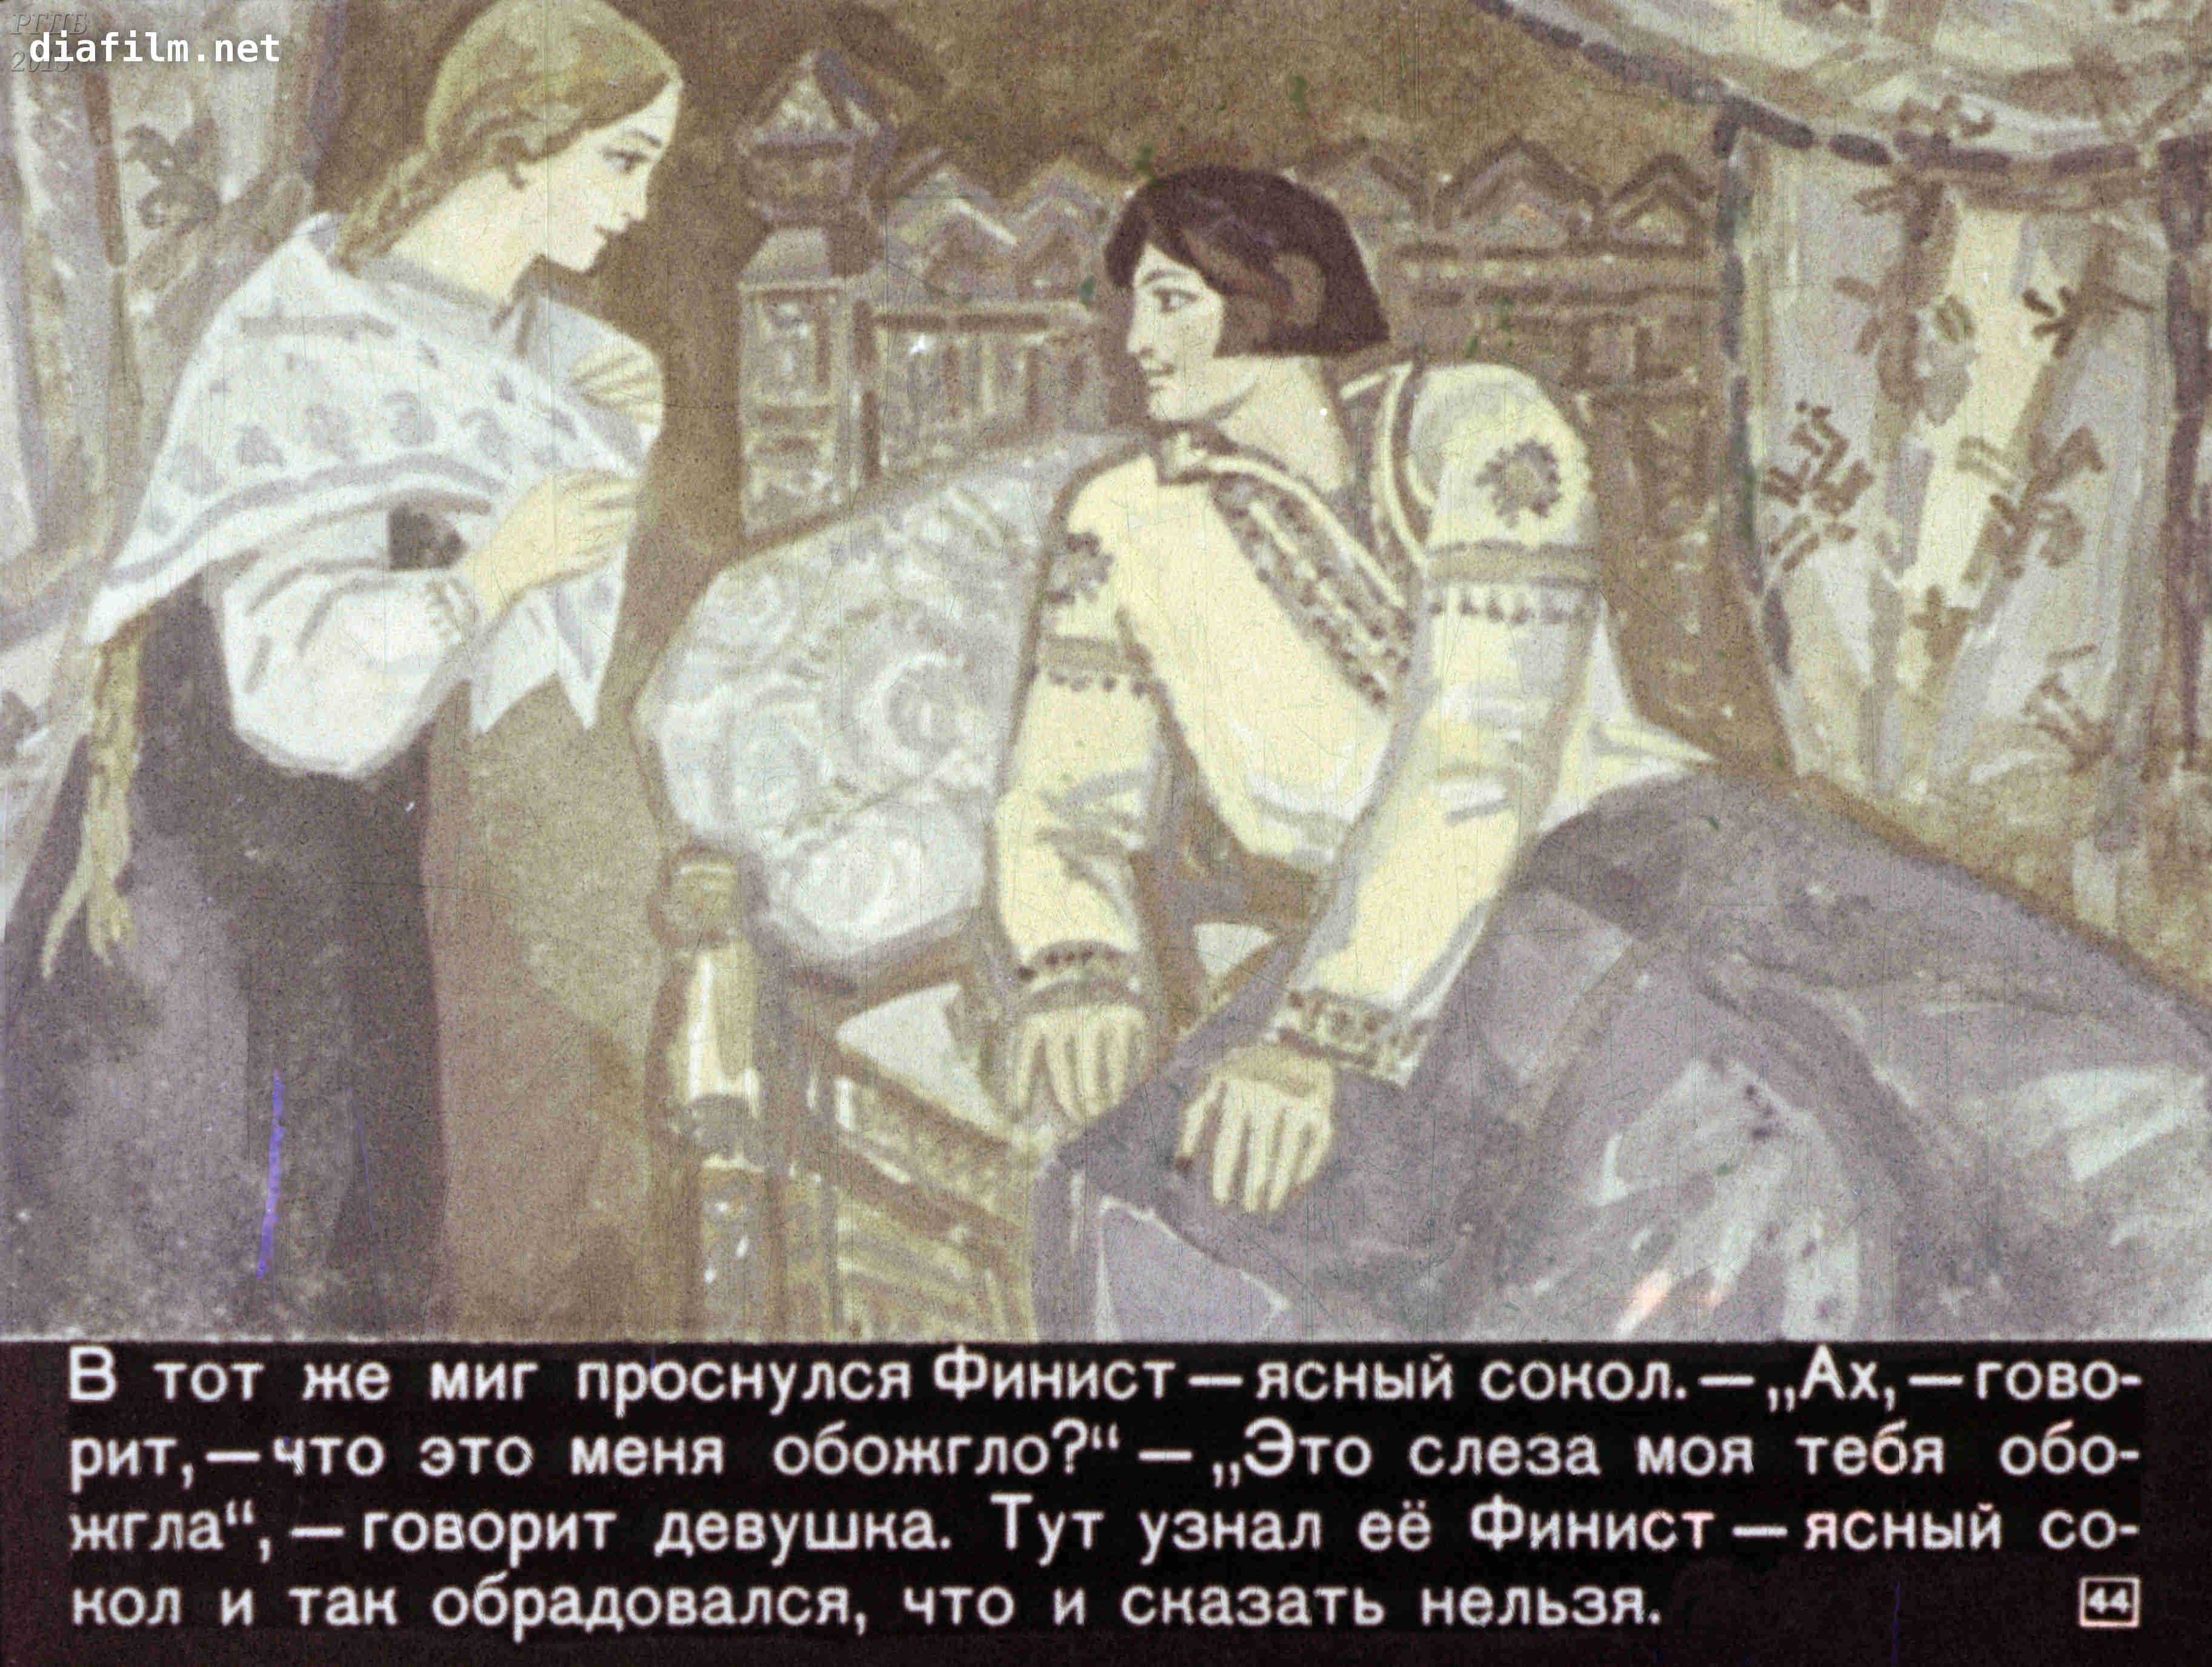 Скрытый смысл русских сказок на примере "финиста ясного сокола"